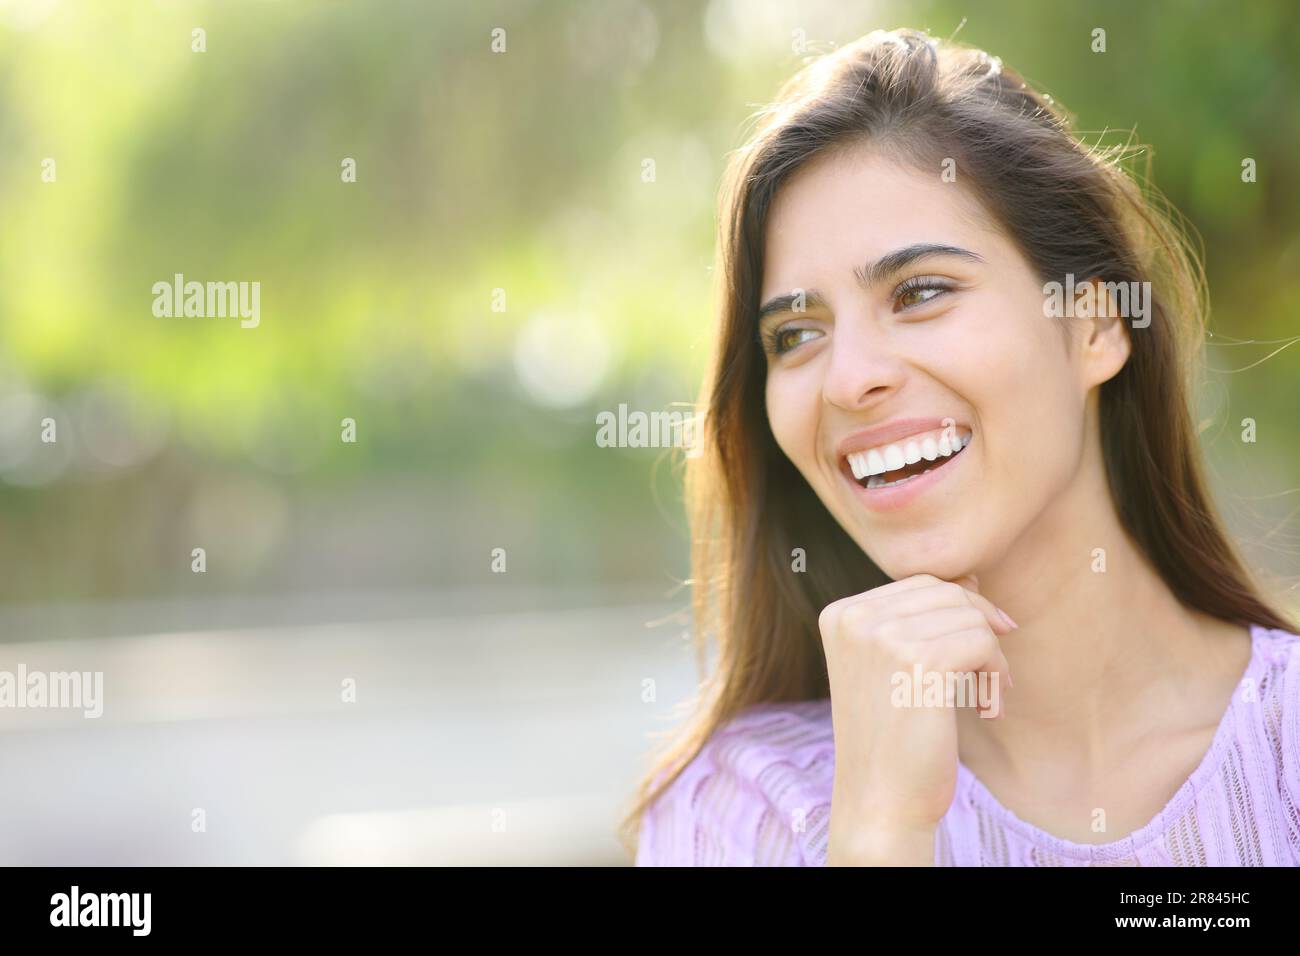 Glückliche Frau mit perfektem Lächeln, die in einem Park wegschaut Stockfoto